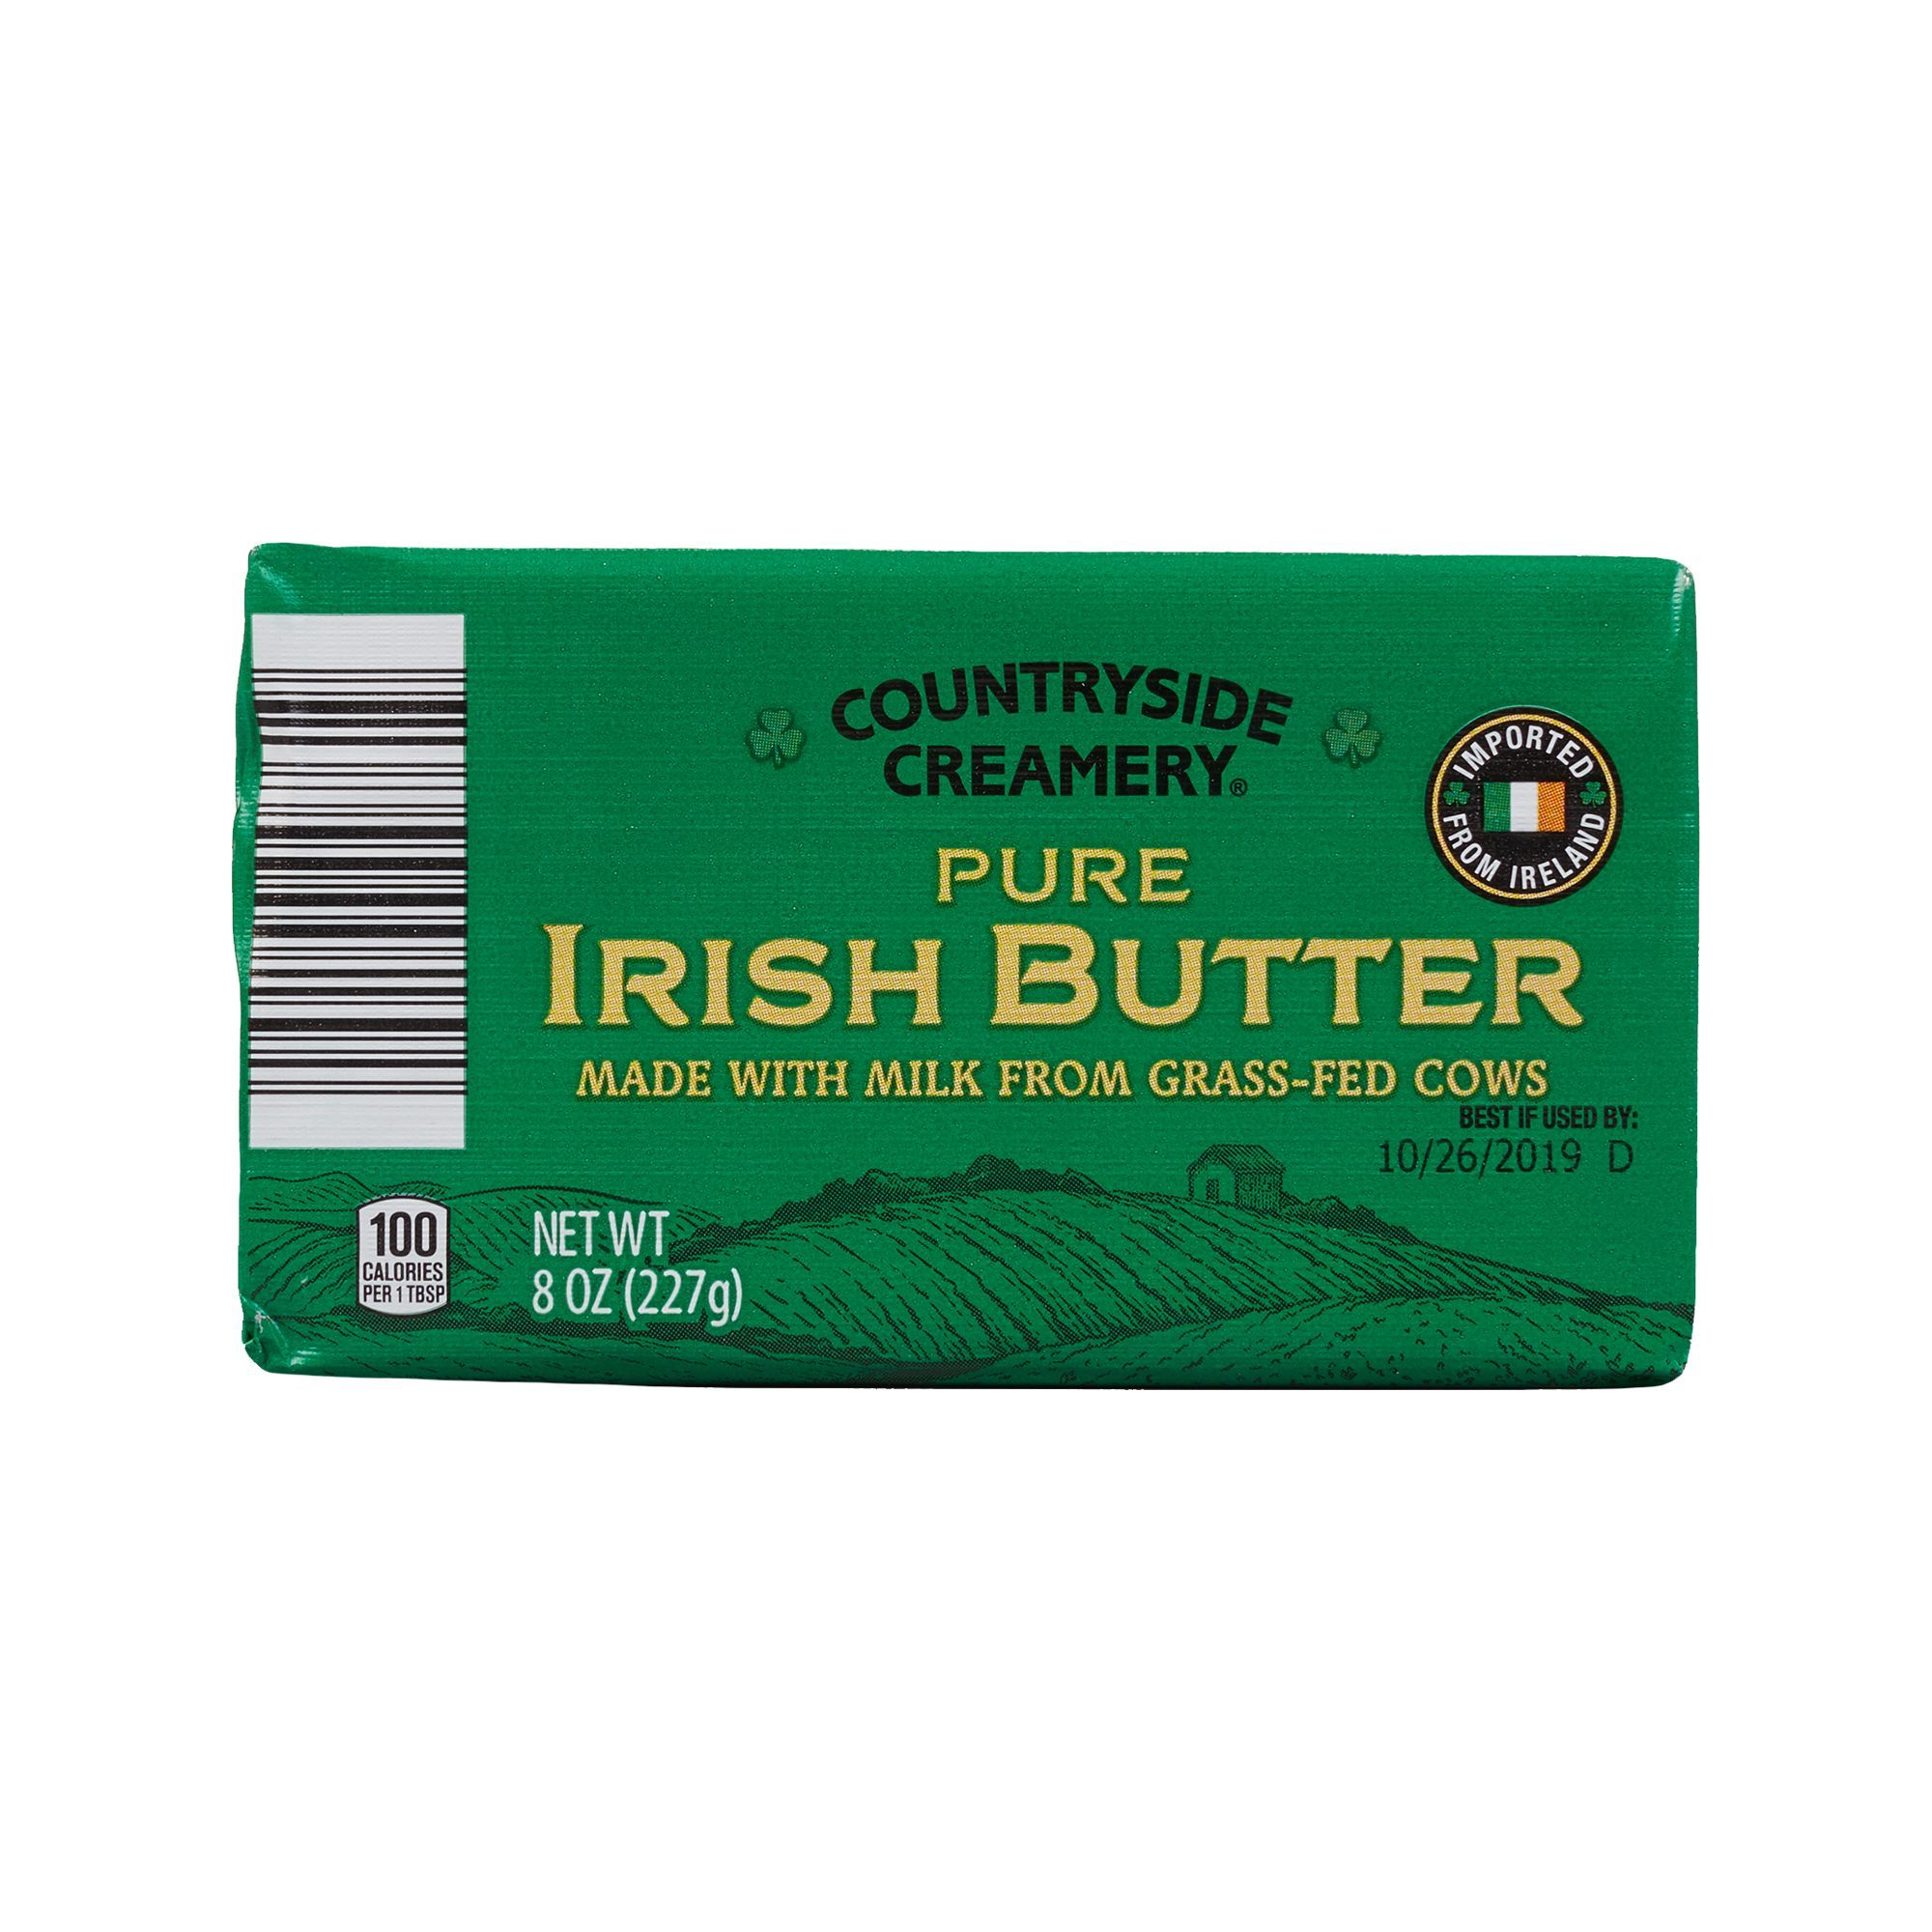 ALDI-exclusive Countryside Creamery Pure Irish Butter